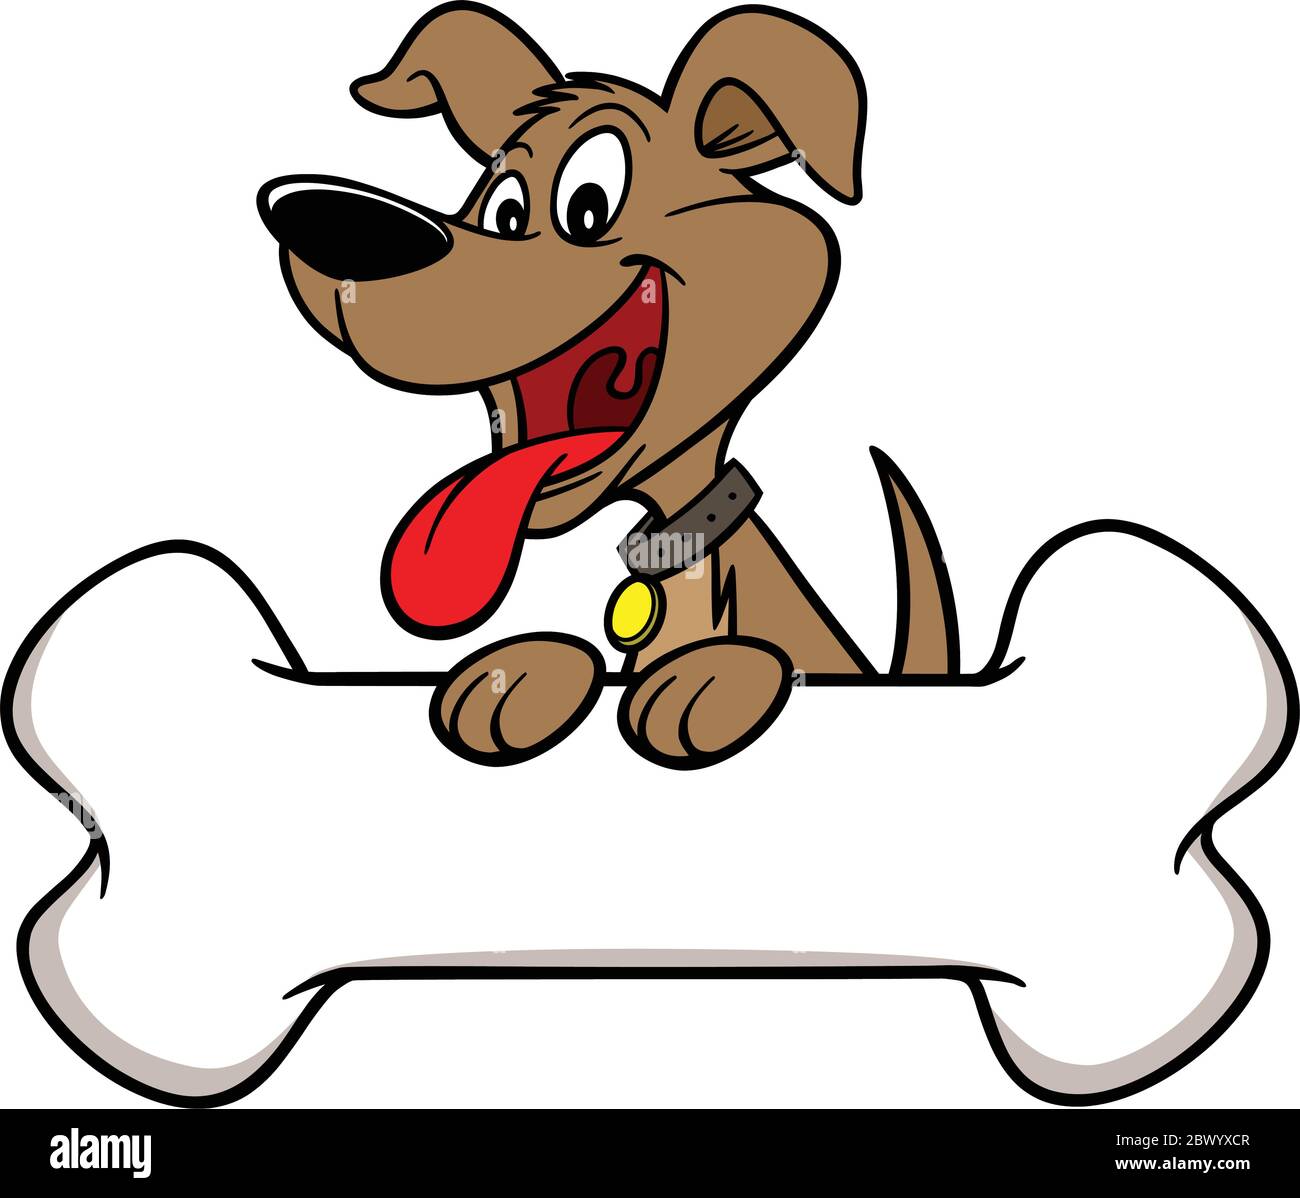 Hund mit Knochen - EINE Cartoon Illustration eines Hundes mit Knochen. Stock Vektor